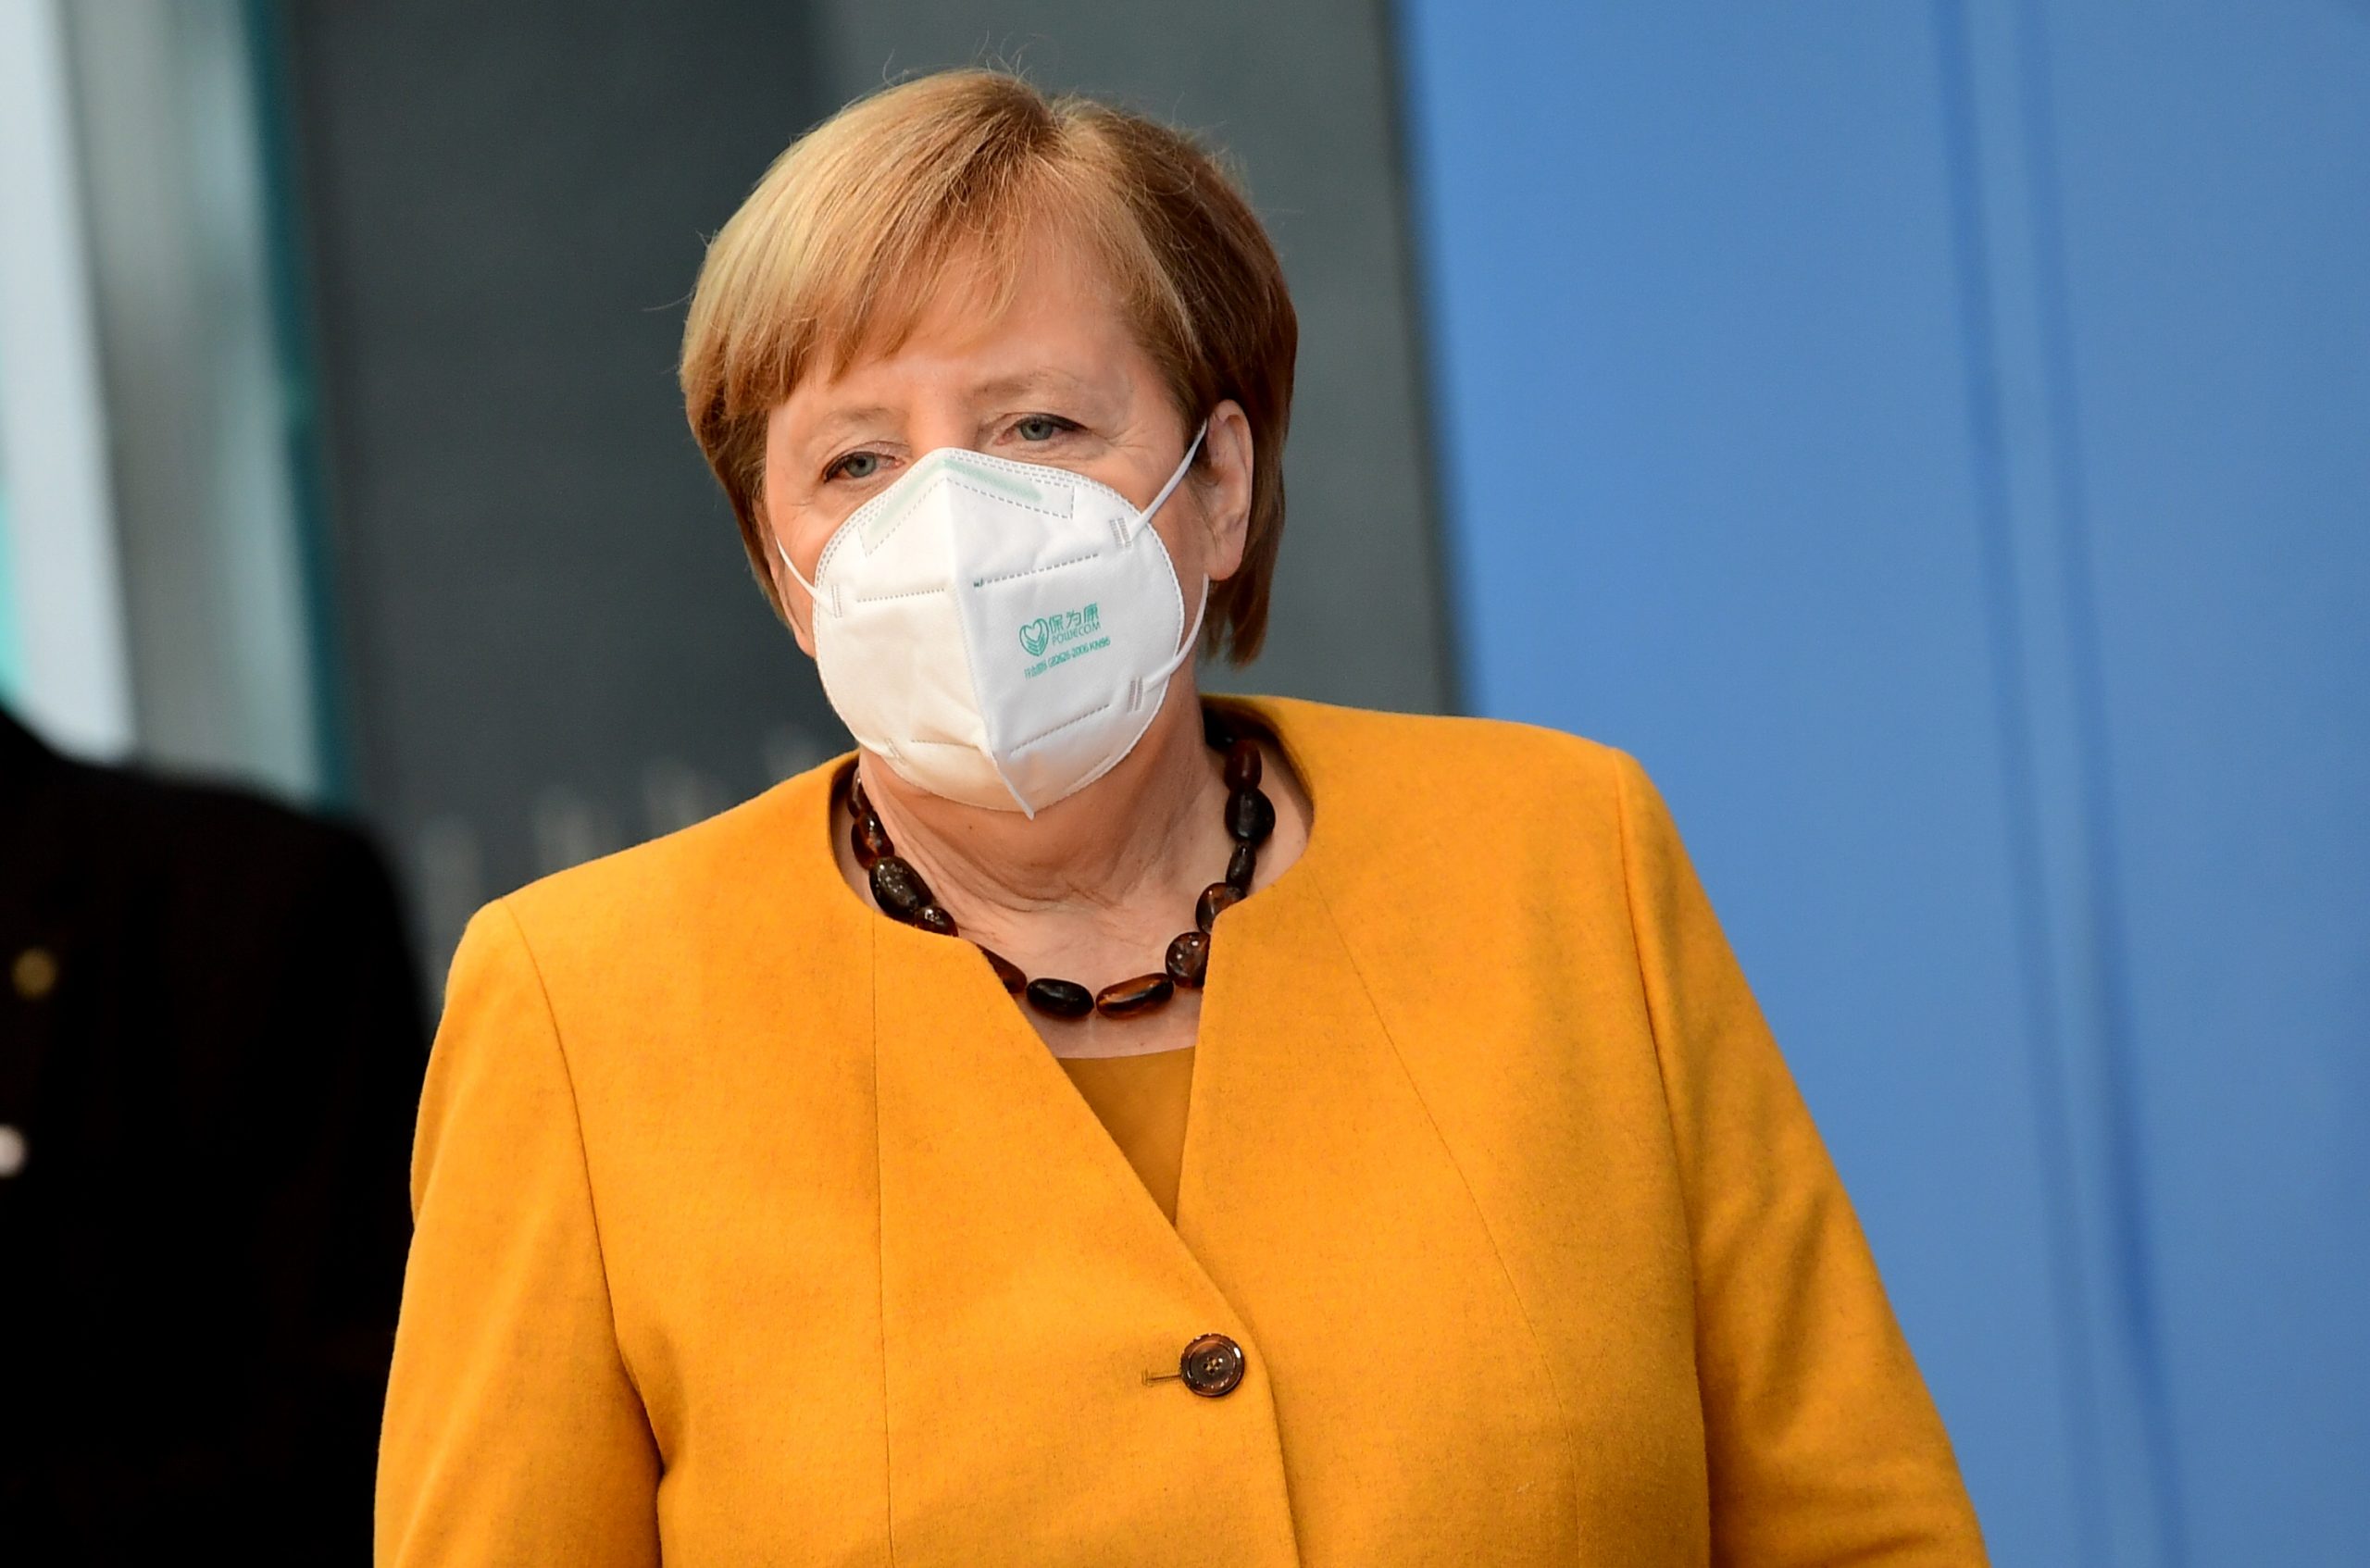 Alemania tendrá restricciones por COVID-19 hasta que el 70% de la población sea inmune